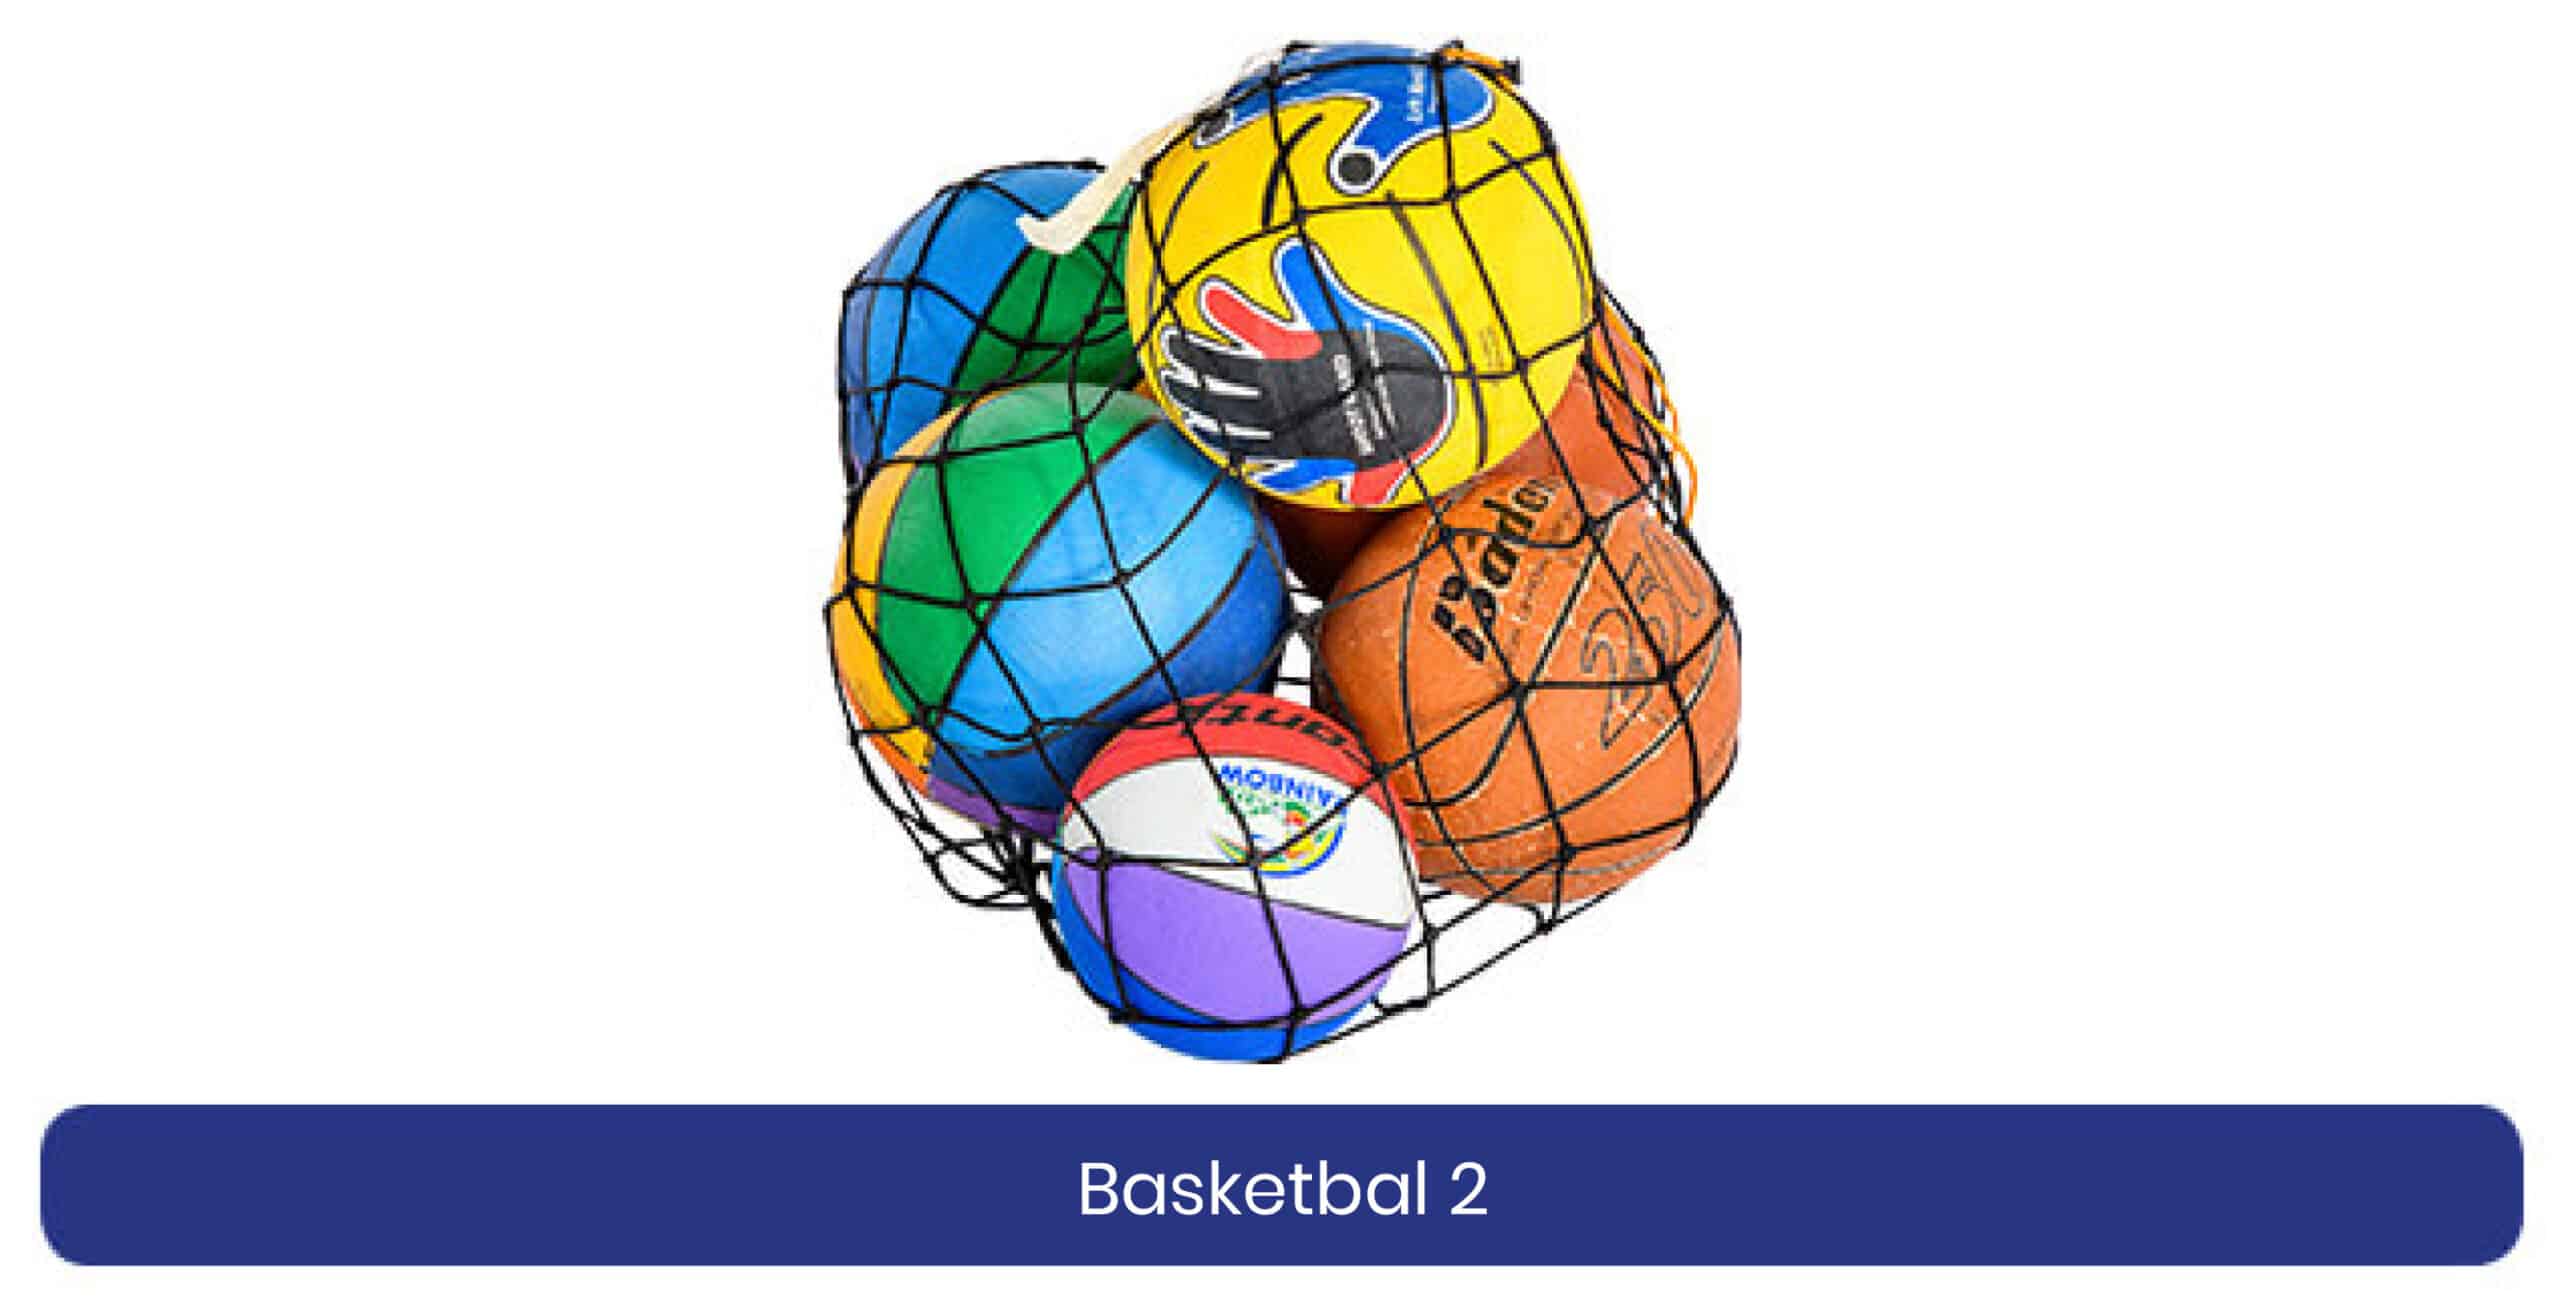 Basketbal 2 lenen product